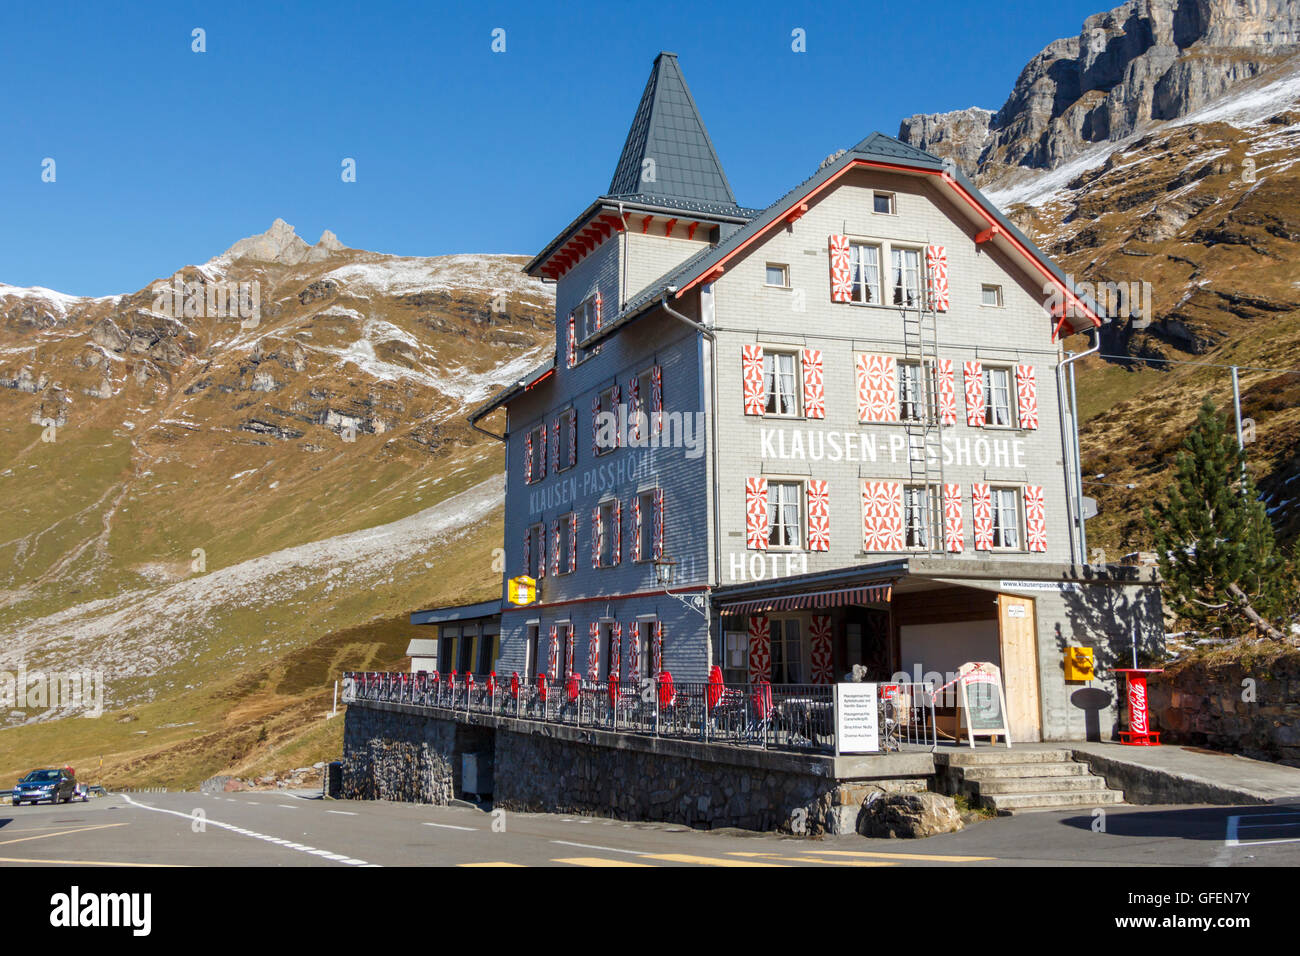 Eine authentische, entfernte Hotel auf dem Klausenpass in der Schweiz. Stockfoto